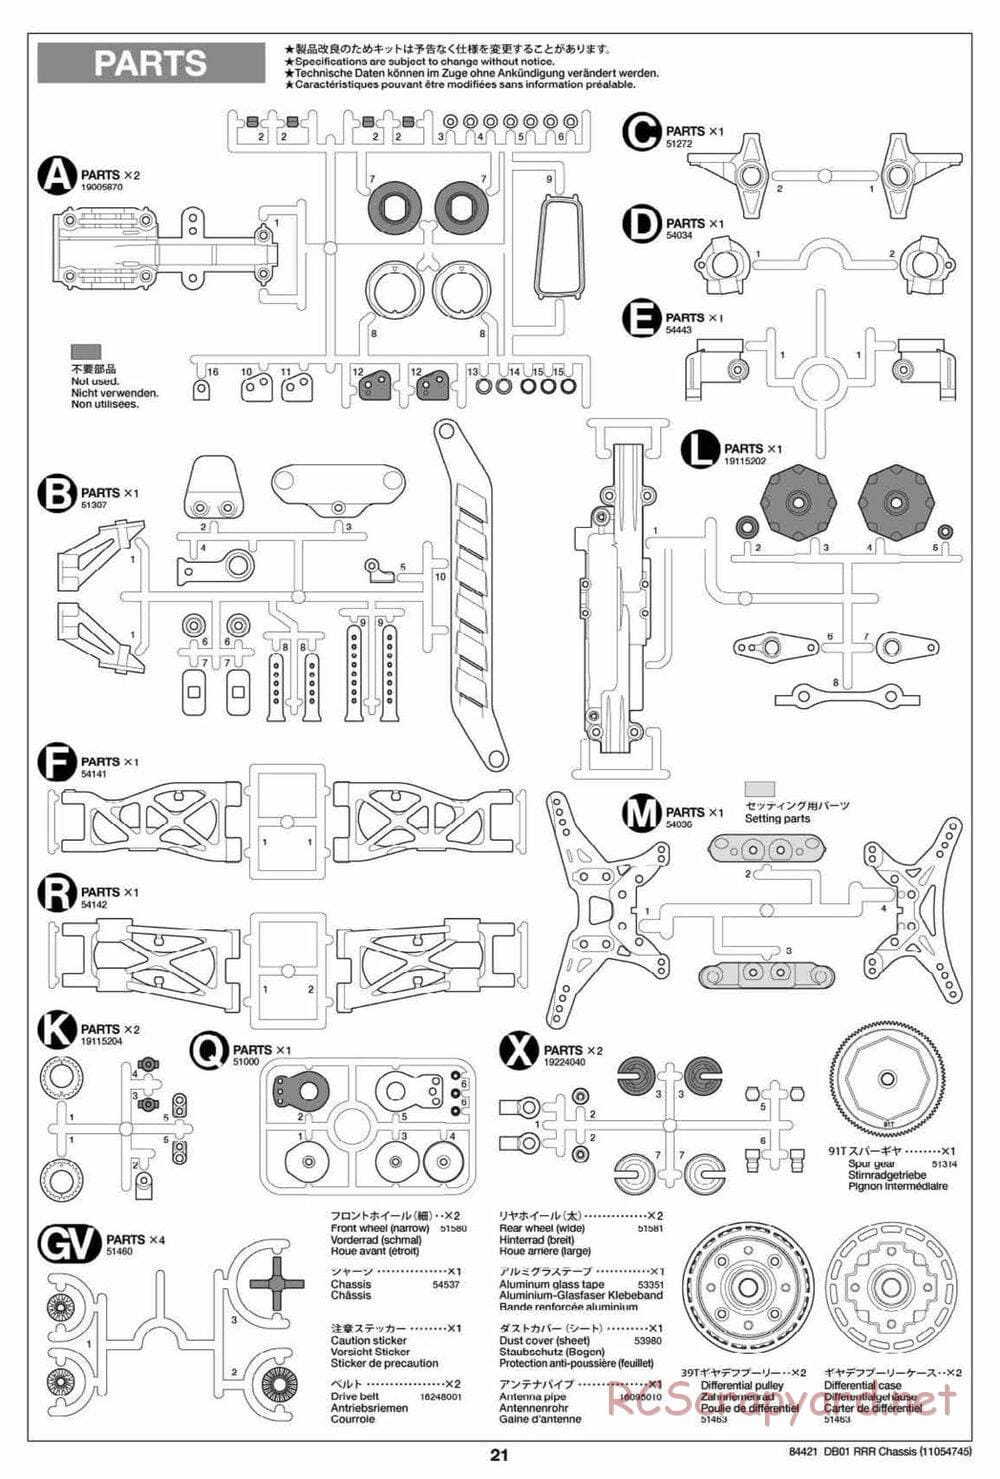 Tamiya - DB-01 RRR Chassis - Manual - Page 21